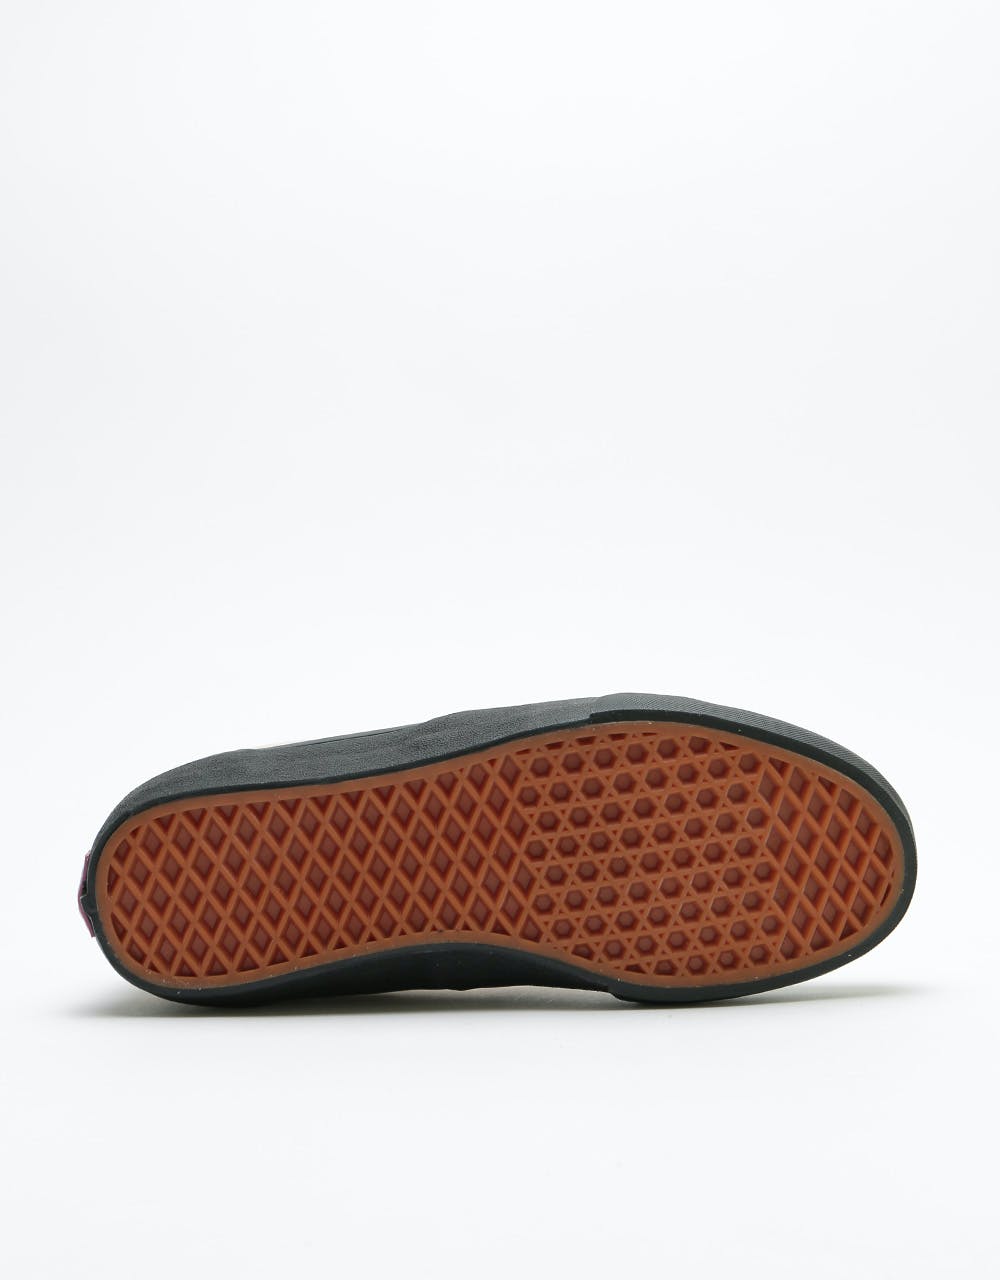 Vans Rowan Pro Skate Shoes - Desert Taupe/Black